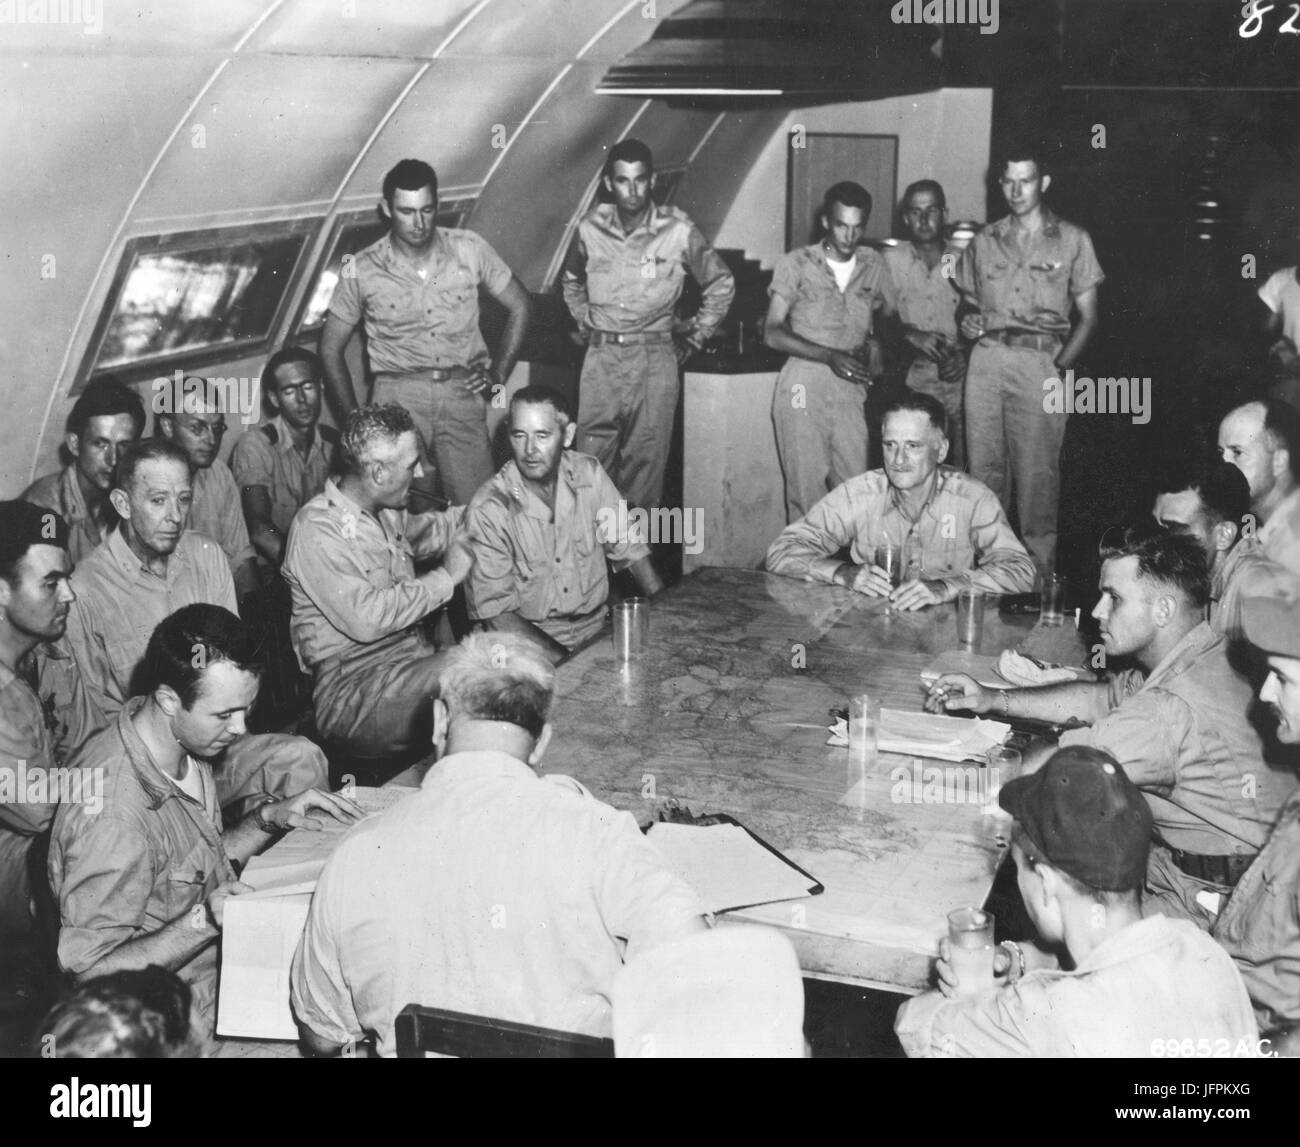 Lt. Generale Nathan Twining, Lt. Barney generale M. Giles e il generale Carl Spaatz (da sinistra a destra intorno al tavolo) assistere il debriefing di 509a gruppo composito che hanno partecipato al primo bombardamento atomico di Hiroshima, Giappone. Tinian, 6 agosto 1945. Foto Stock